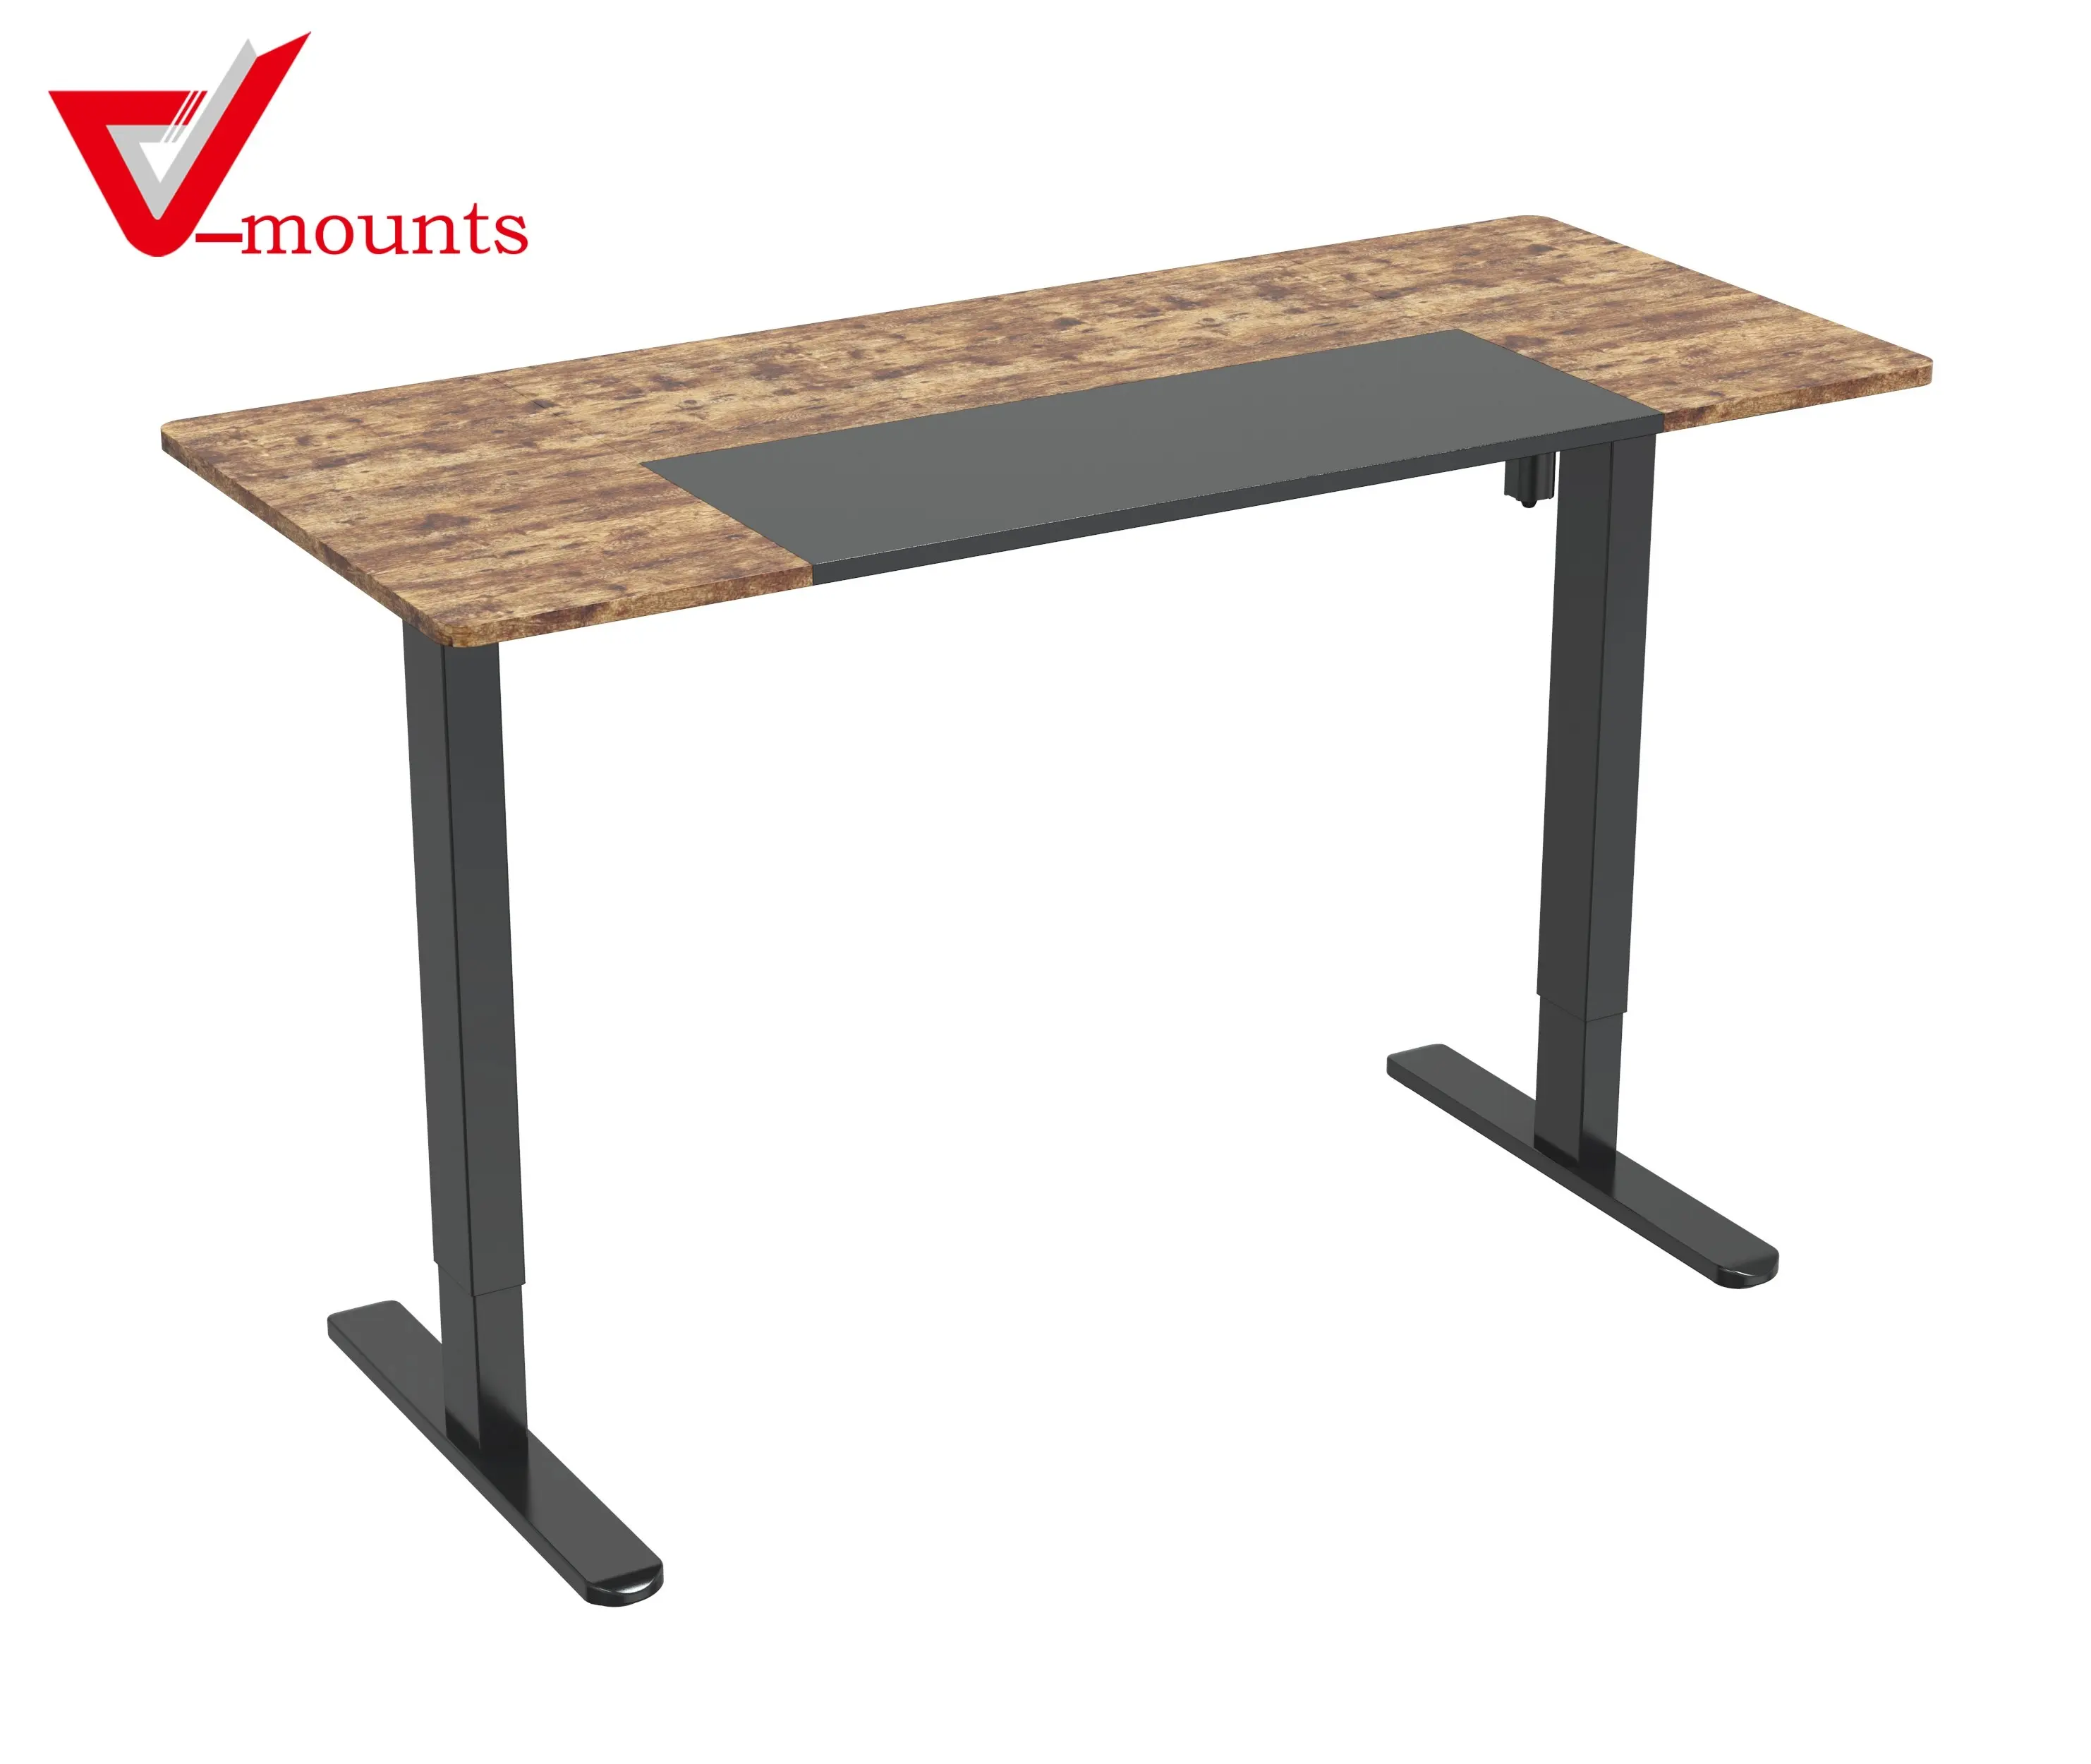 V-mounts ErgoFusion single motor office electric adjustable desk adjustable height desks table adjustable VM-JSD5-02-4P